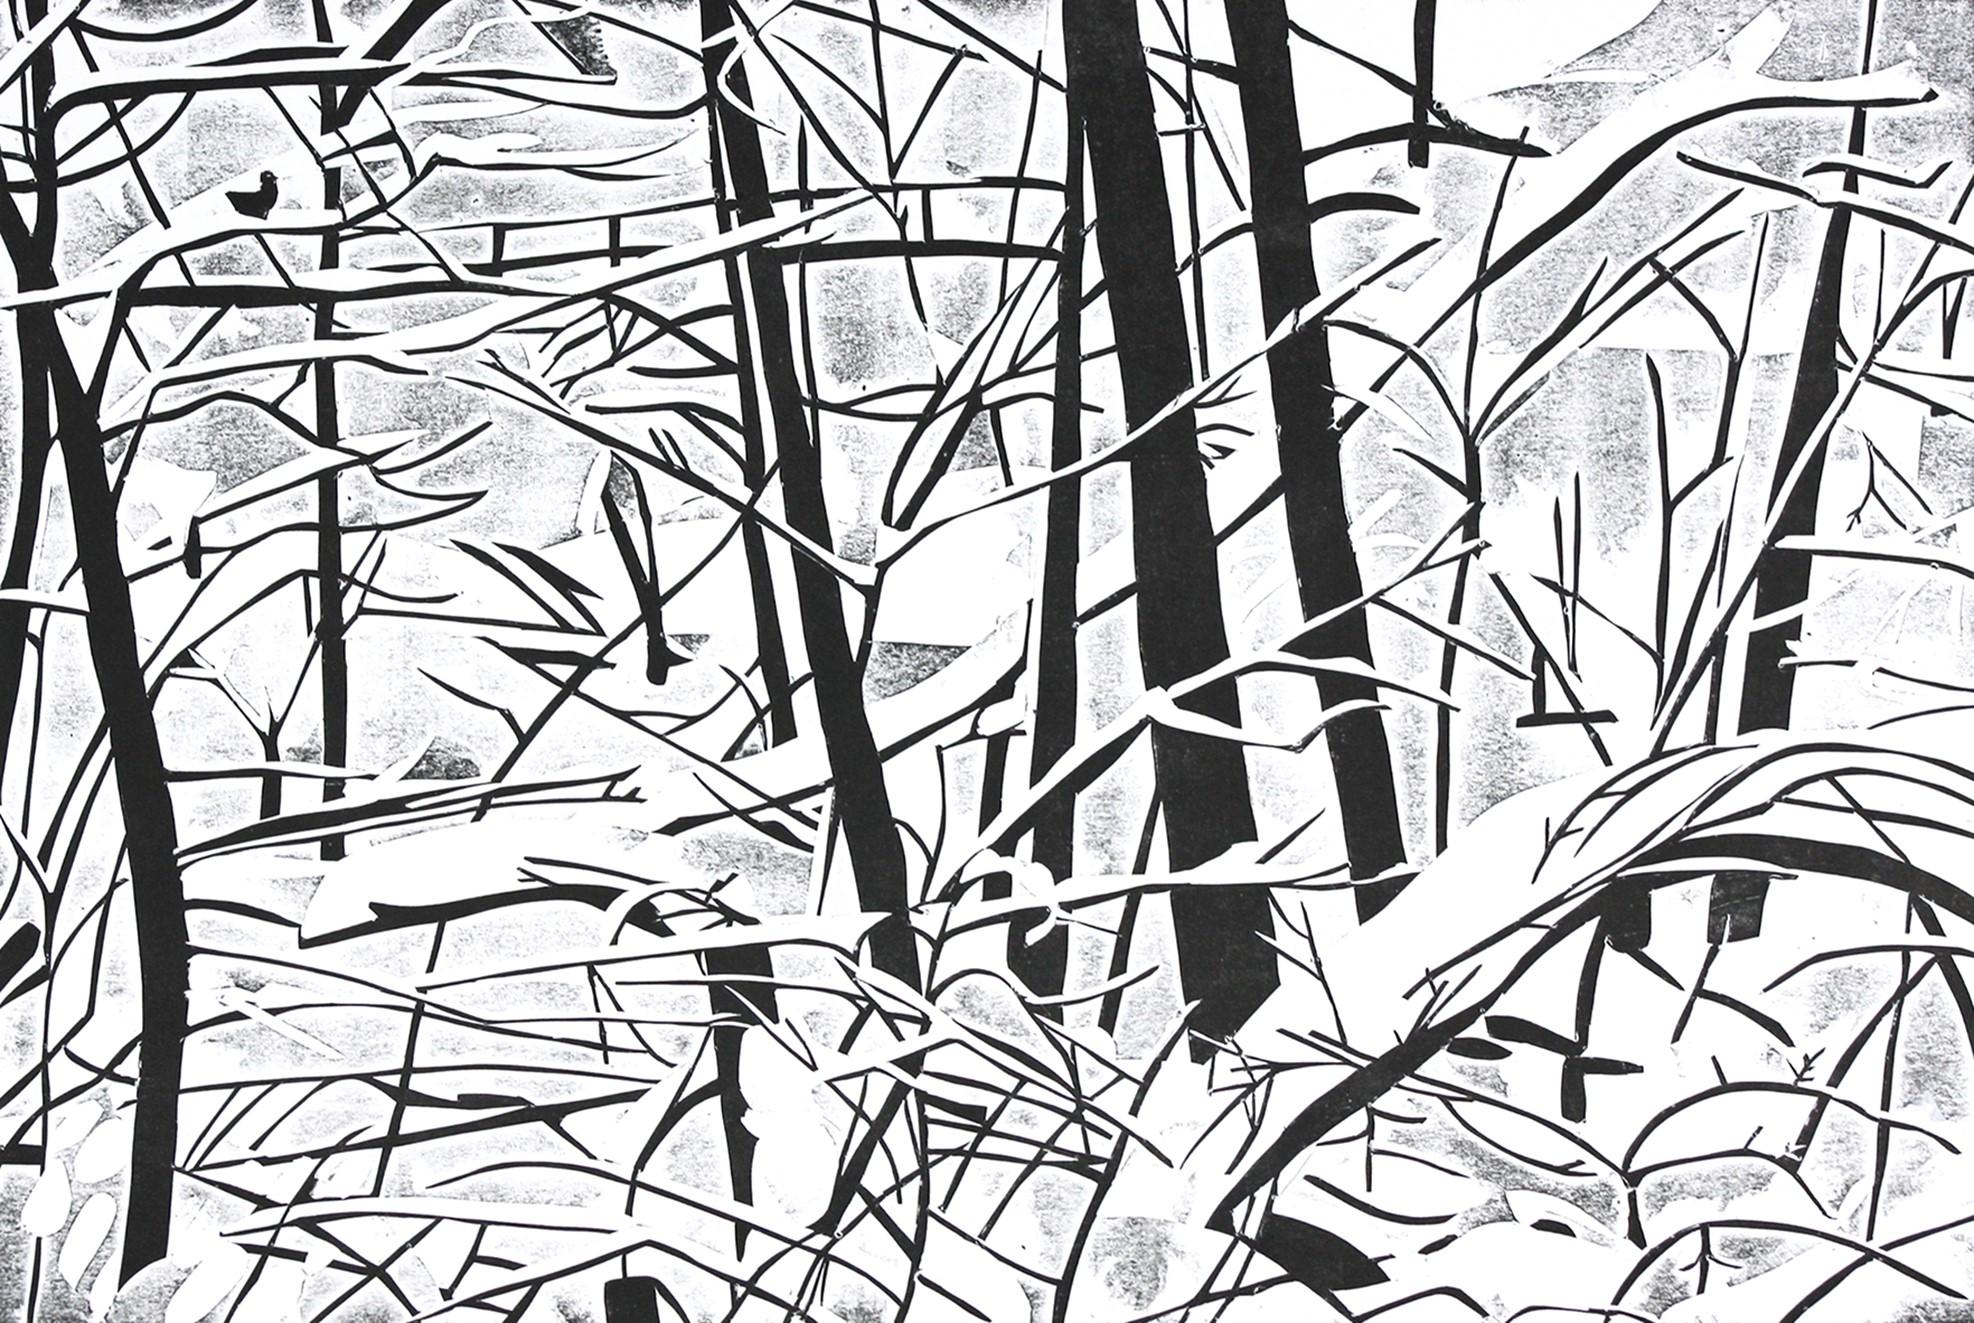 Iana Vulpen mustavalkoinen grafiikan teos, jossa lumisia lehtipuiden runkoja